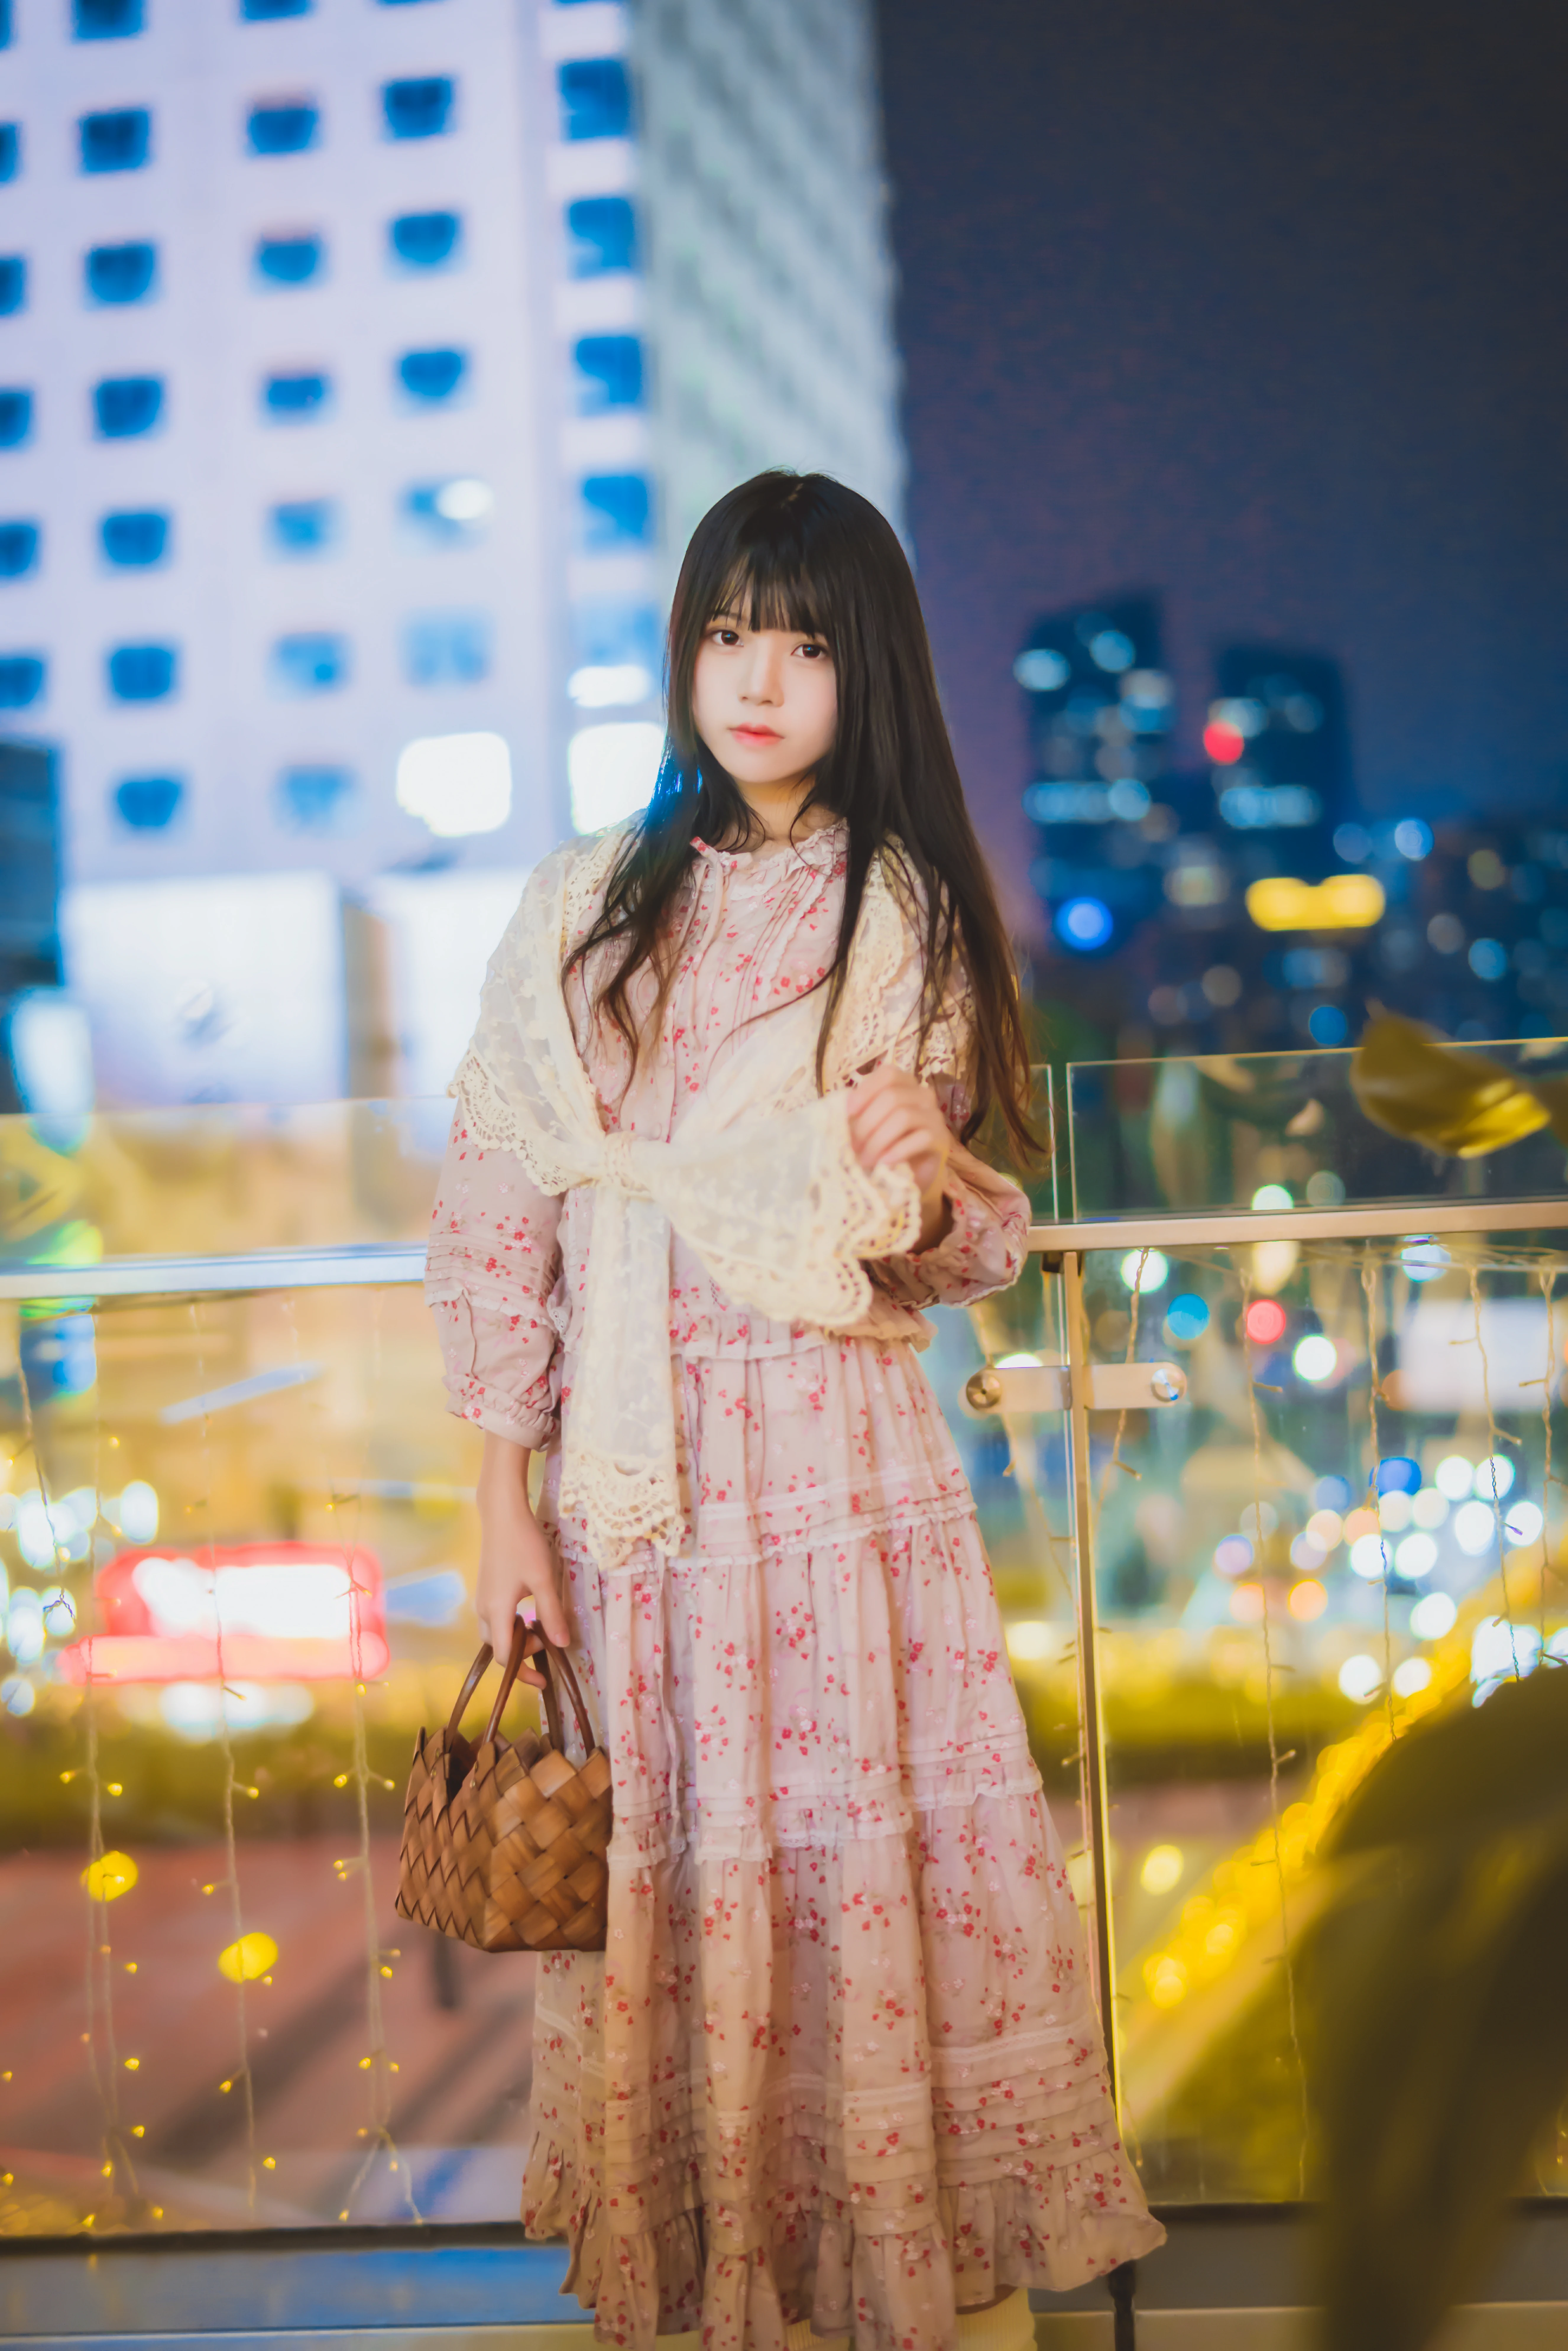 清纯少女小萝莉 桜桃喵 粉色连身裙与蓝色和服私房写真,0011